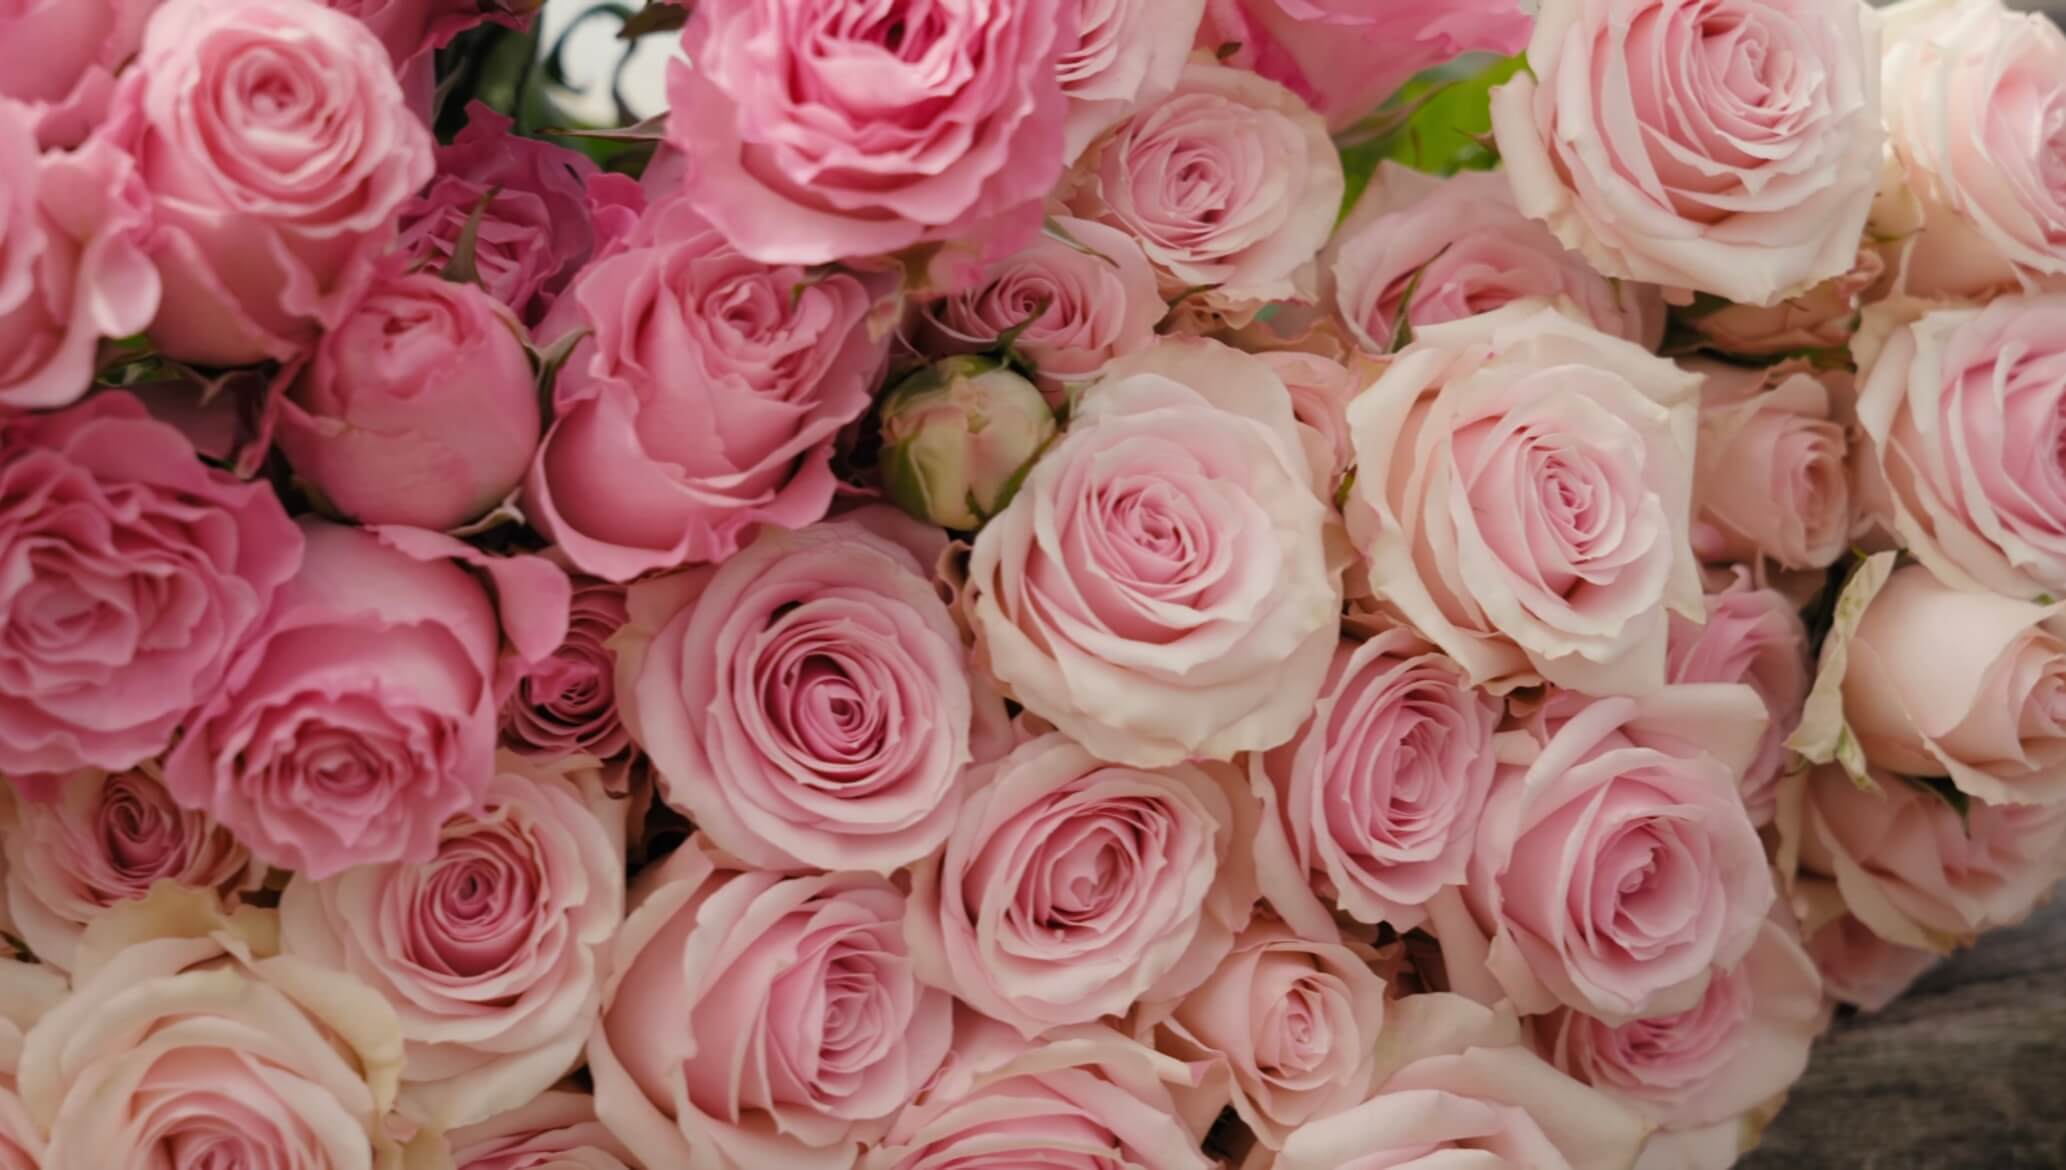 В статье расскажем о Anni Roses из Эквадора, которые выращивают разные эксклюзивные сорта, выгодно выделяющие их среди конкурентов.